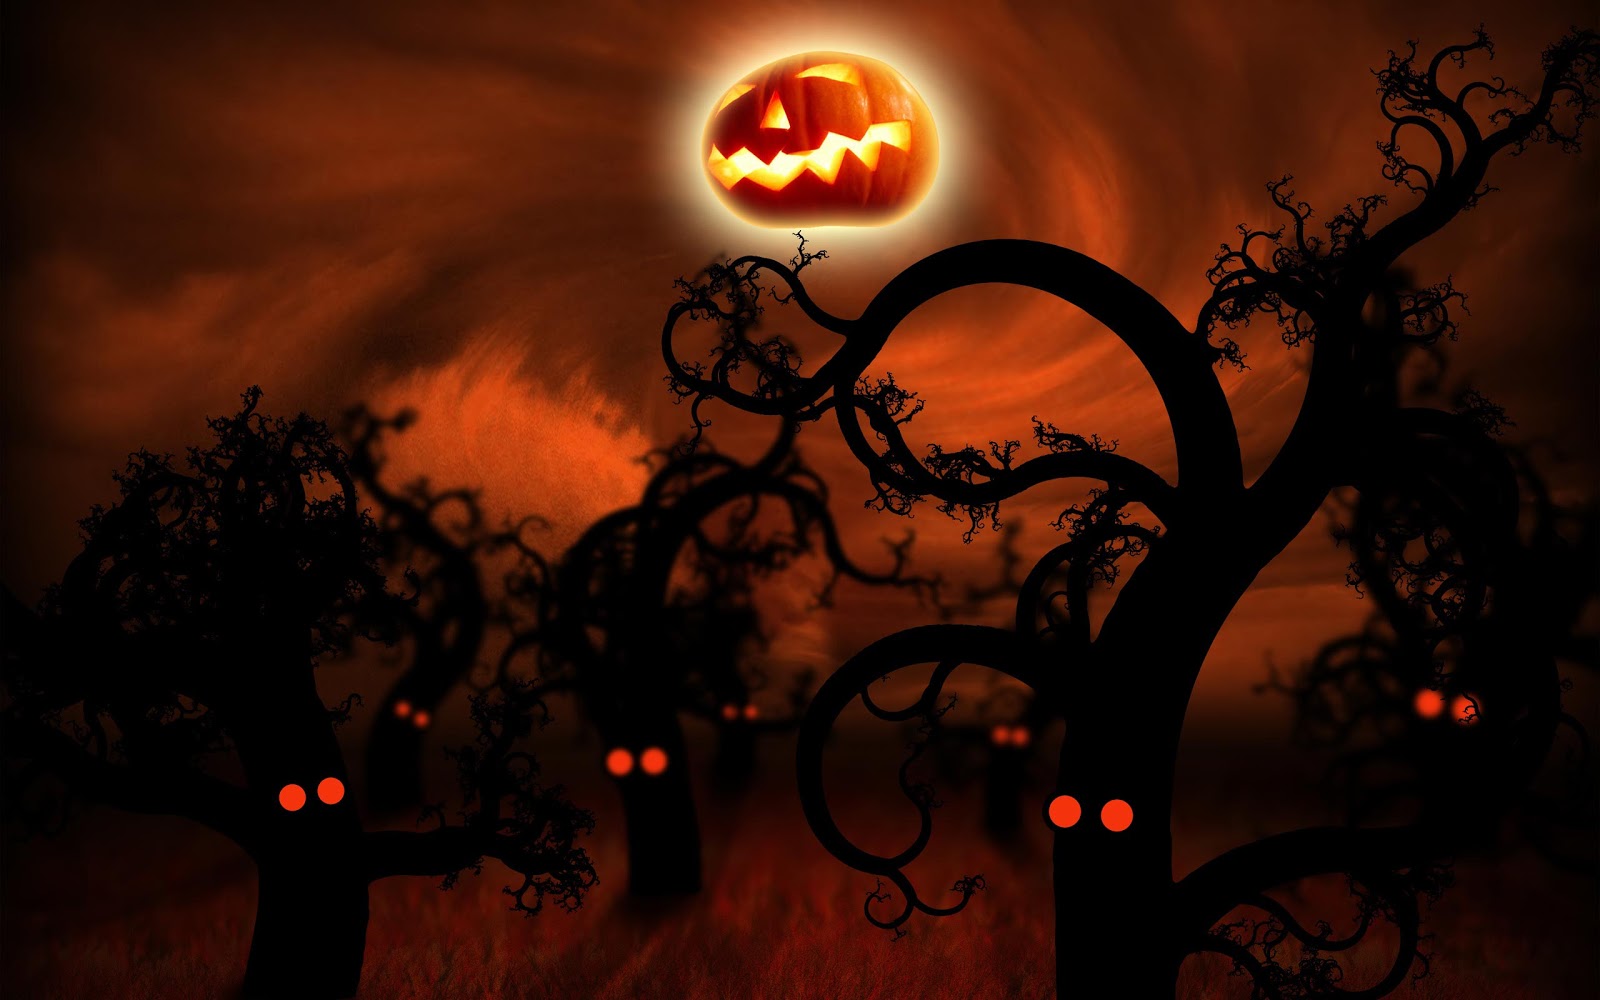 http://2.bp.blogspot.com/-ma5v1SVh2xU/UHbrDT0NlhI/AAAAAAAAHS4/H8aXmb3vmtI/s1600/Halloween+Wallpaper+Backgrounds+002.jpg